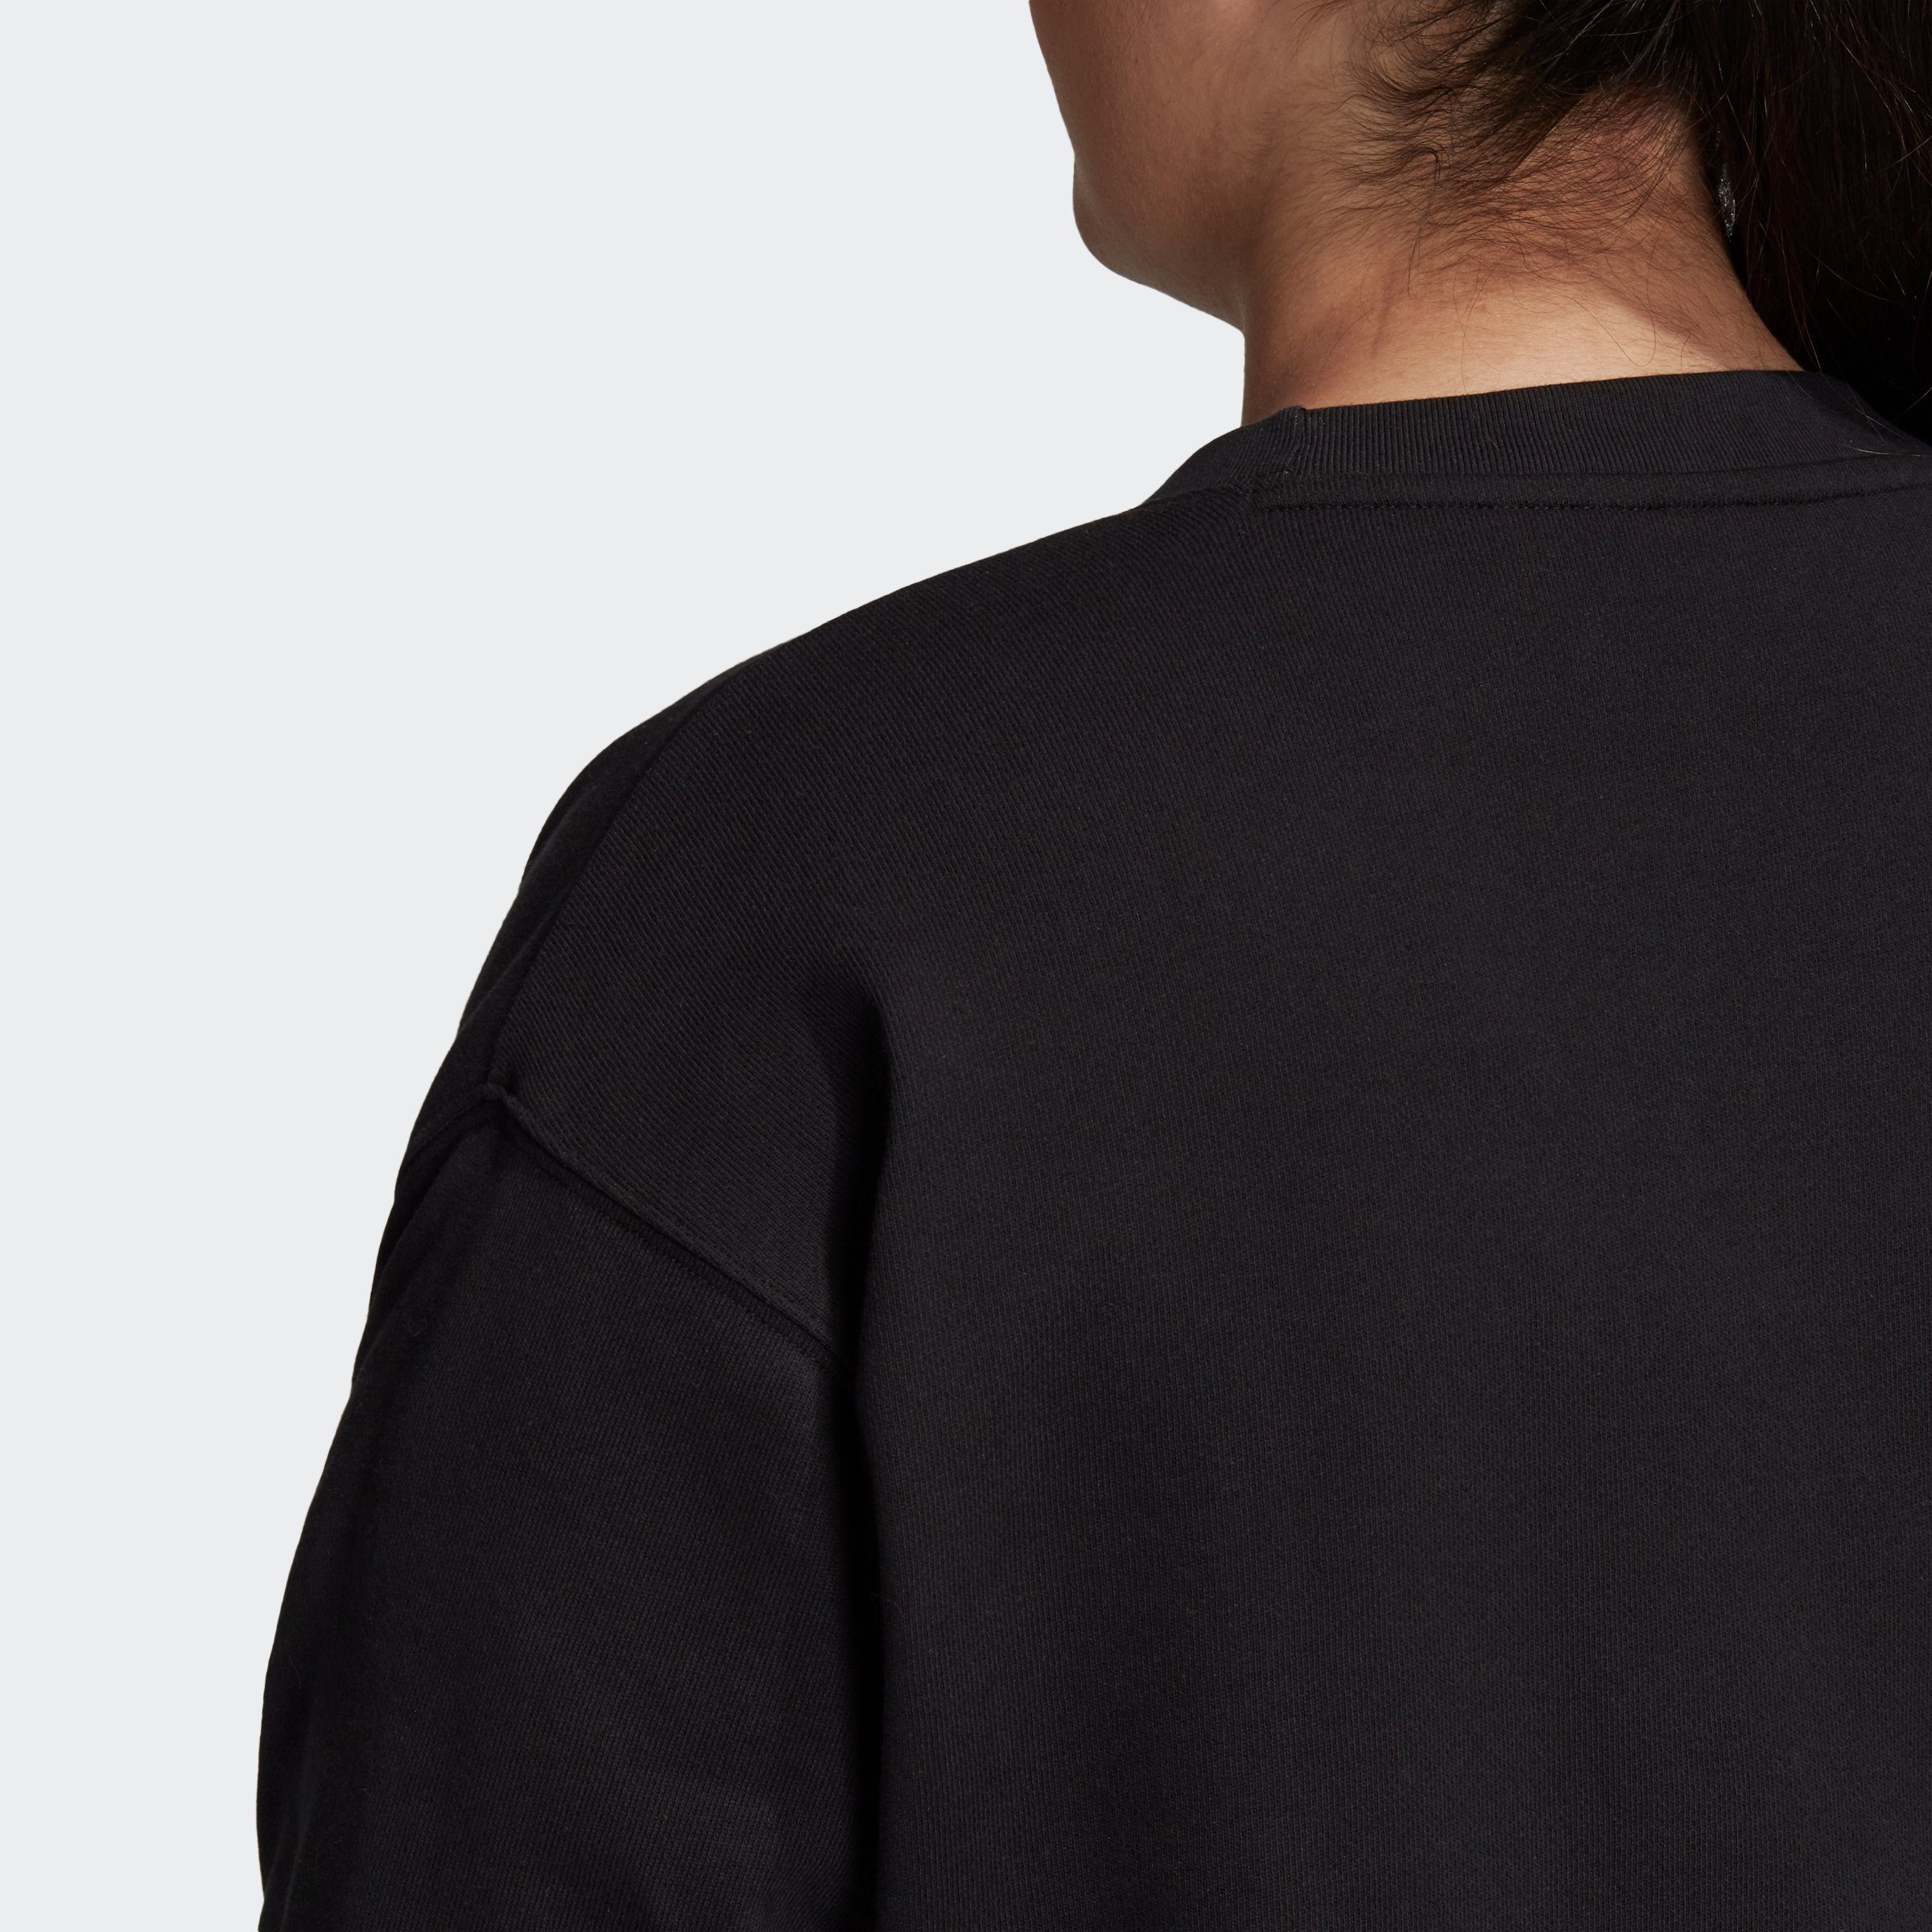 GROSSE – TREFOIL Originals GRÖSSEN adidas Sweatshirt BLACK/WHITE